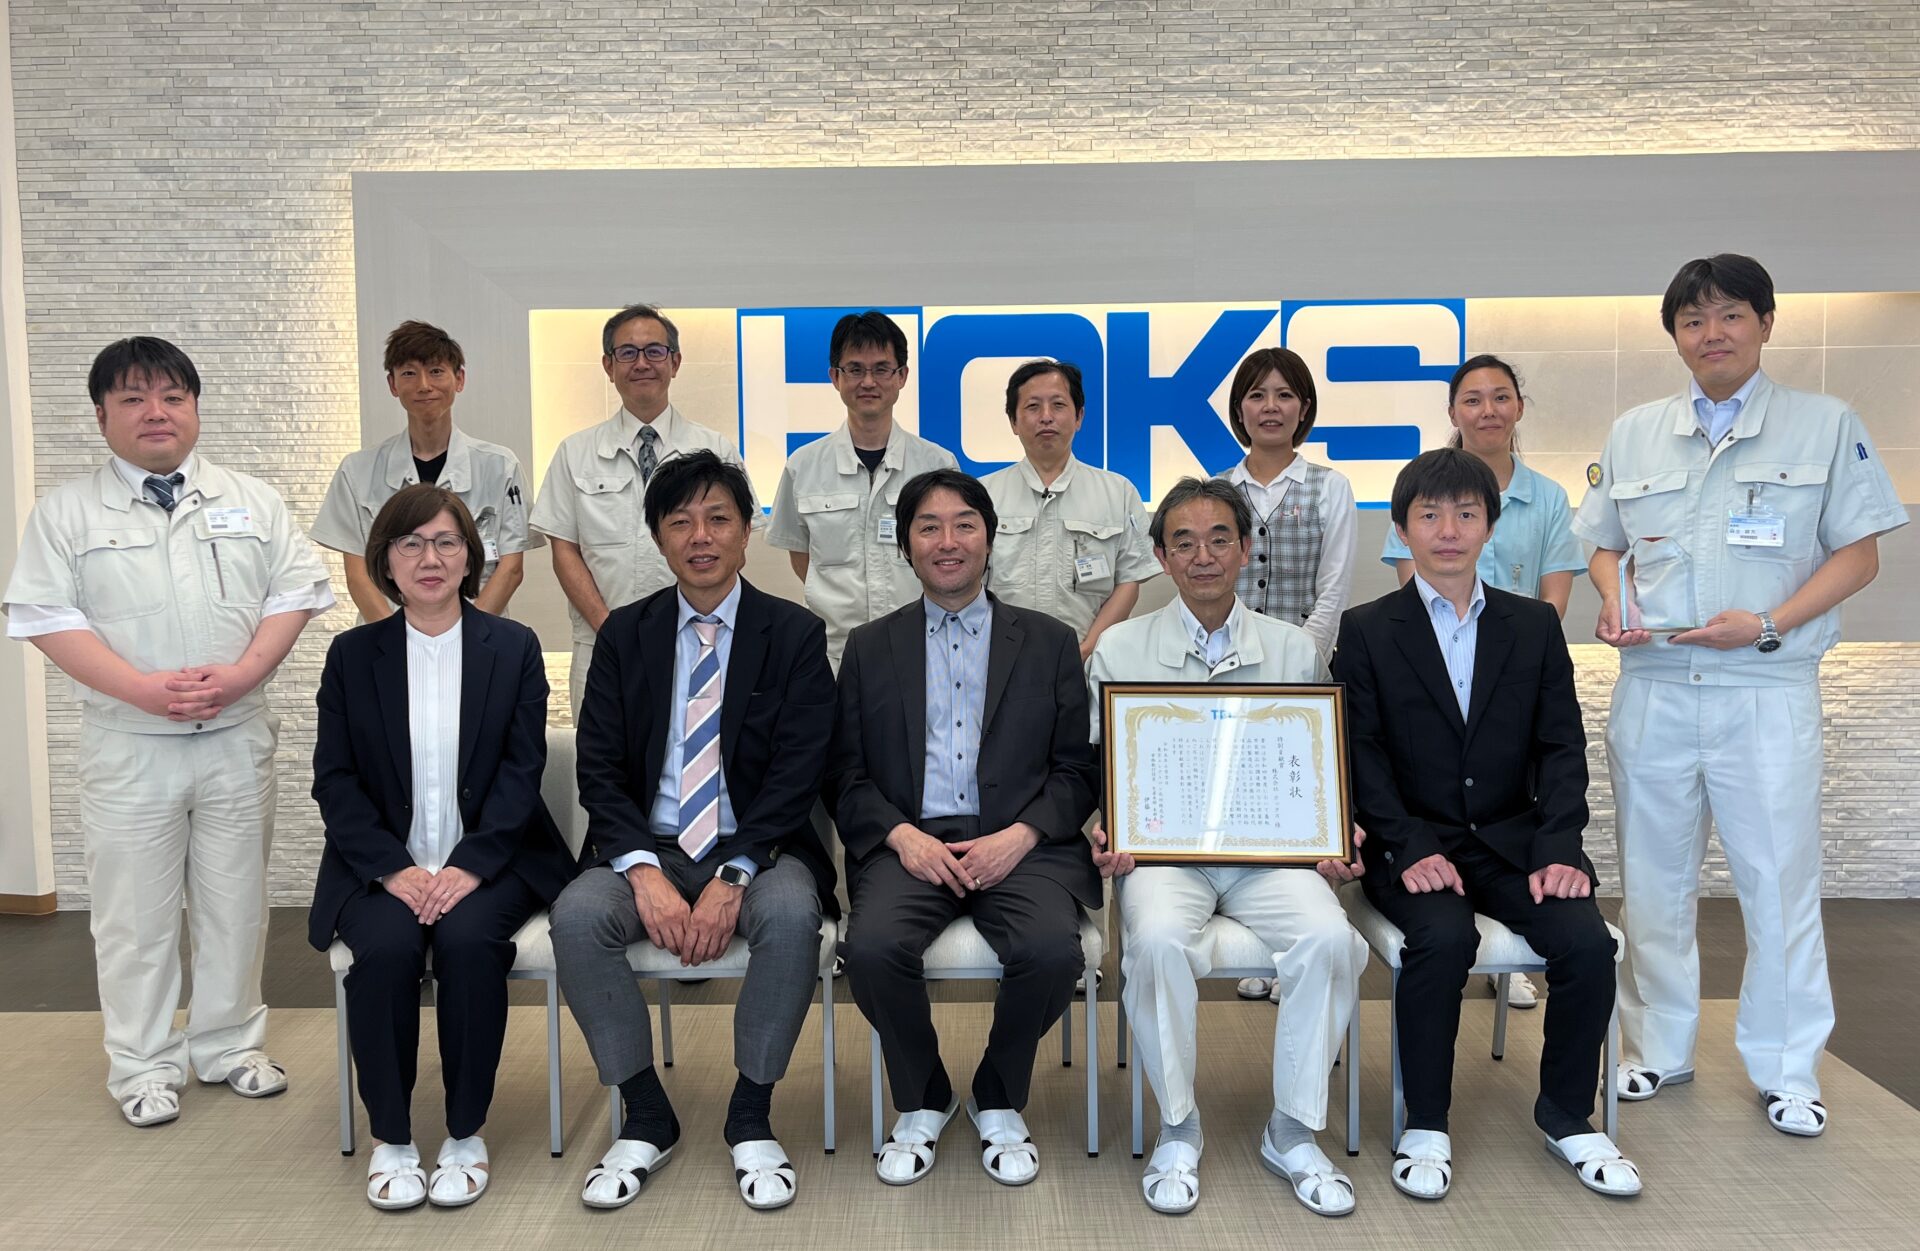 東京エレクトロン九州株式会社様より表彰されました。